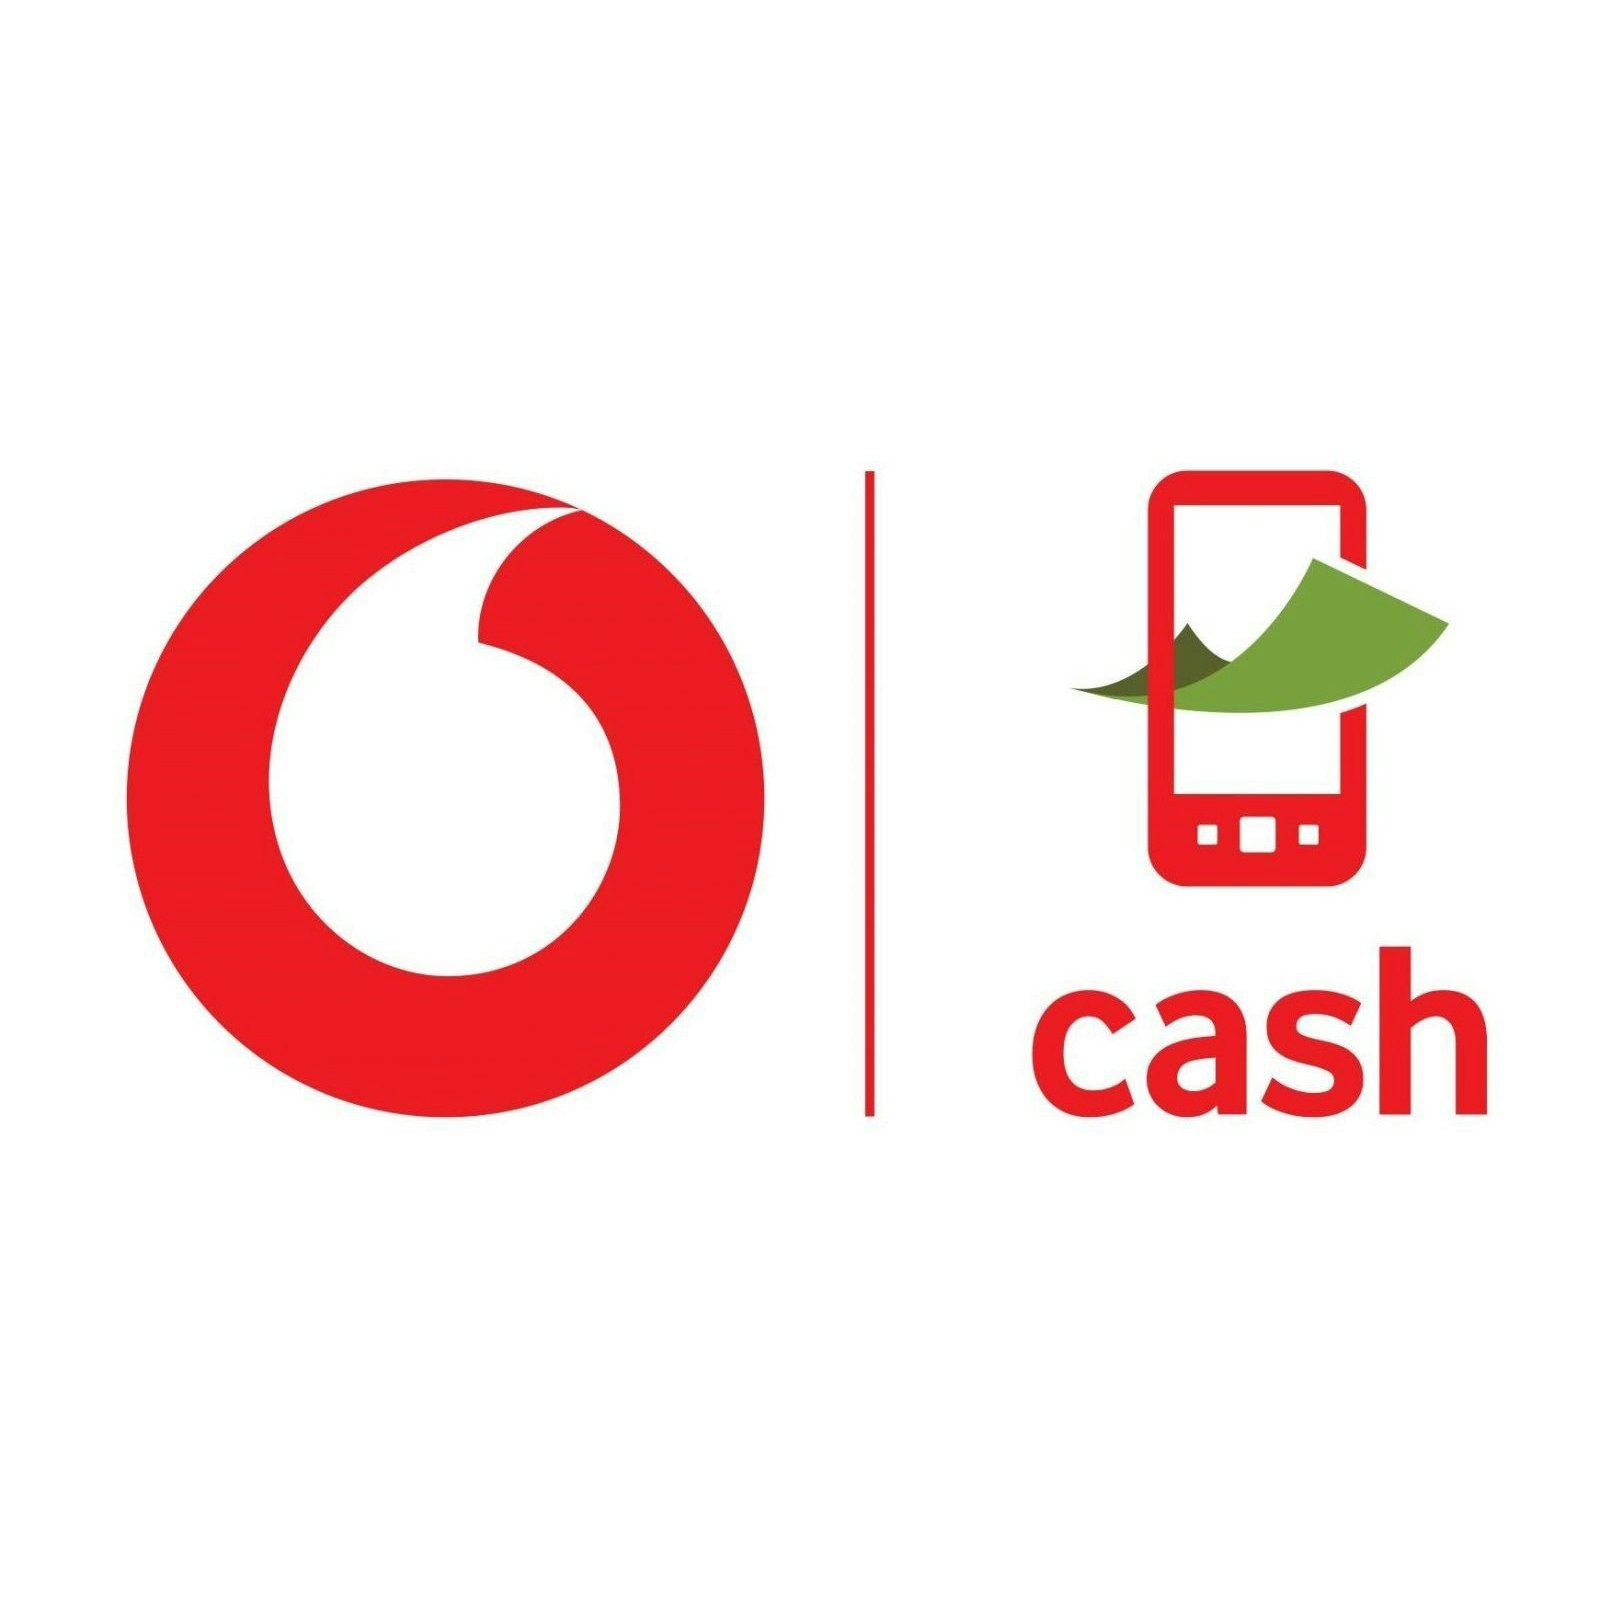 Asset - Vodafone cash